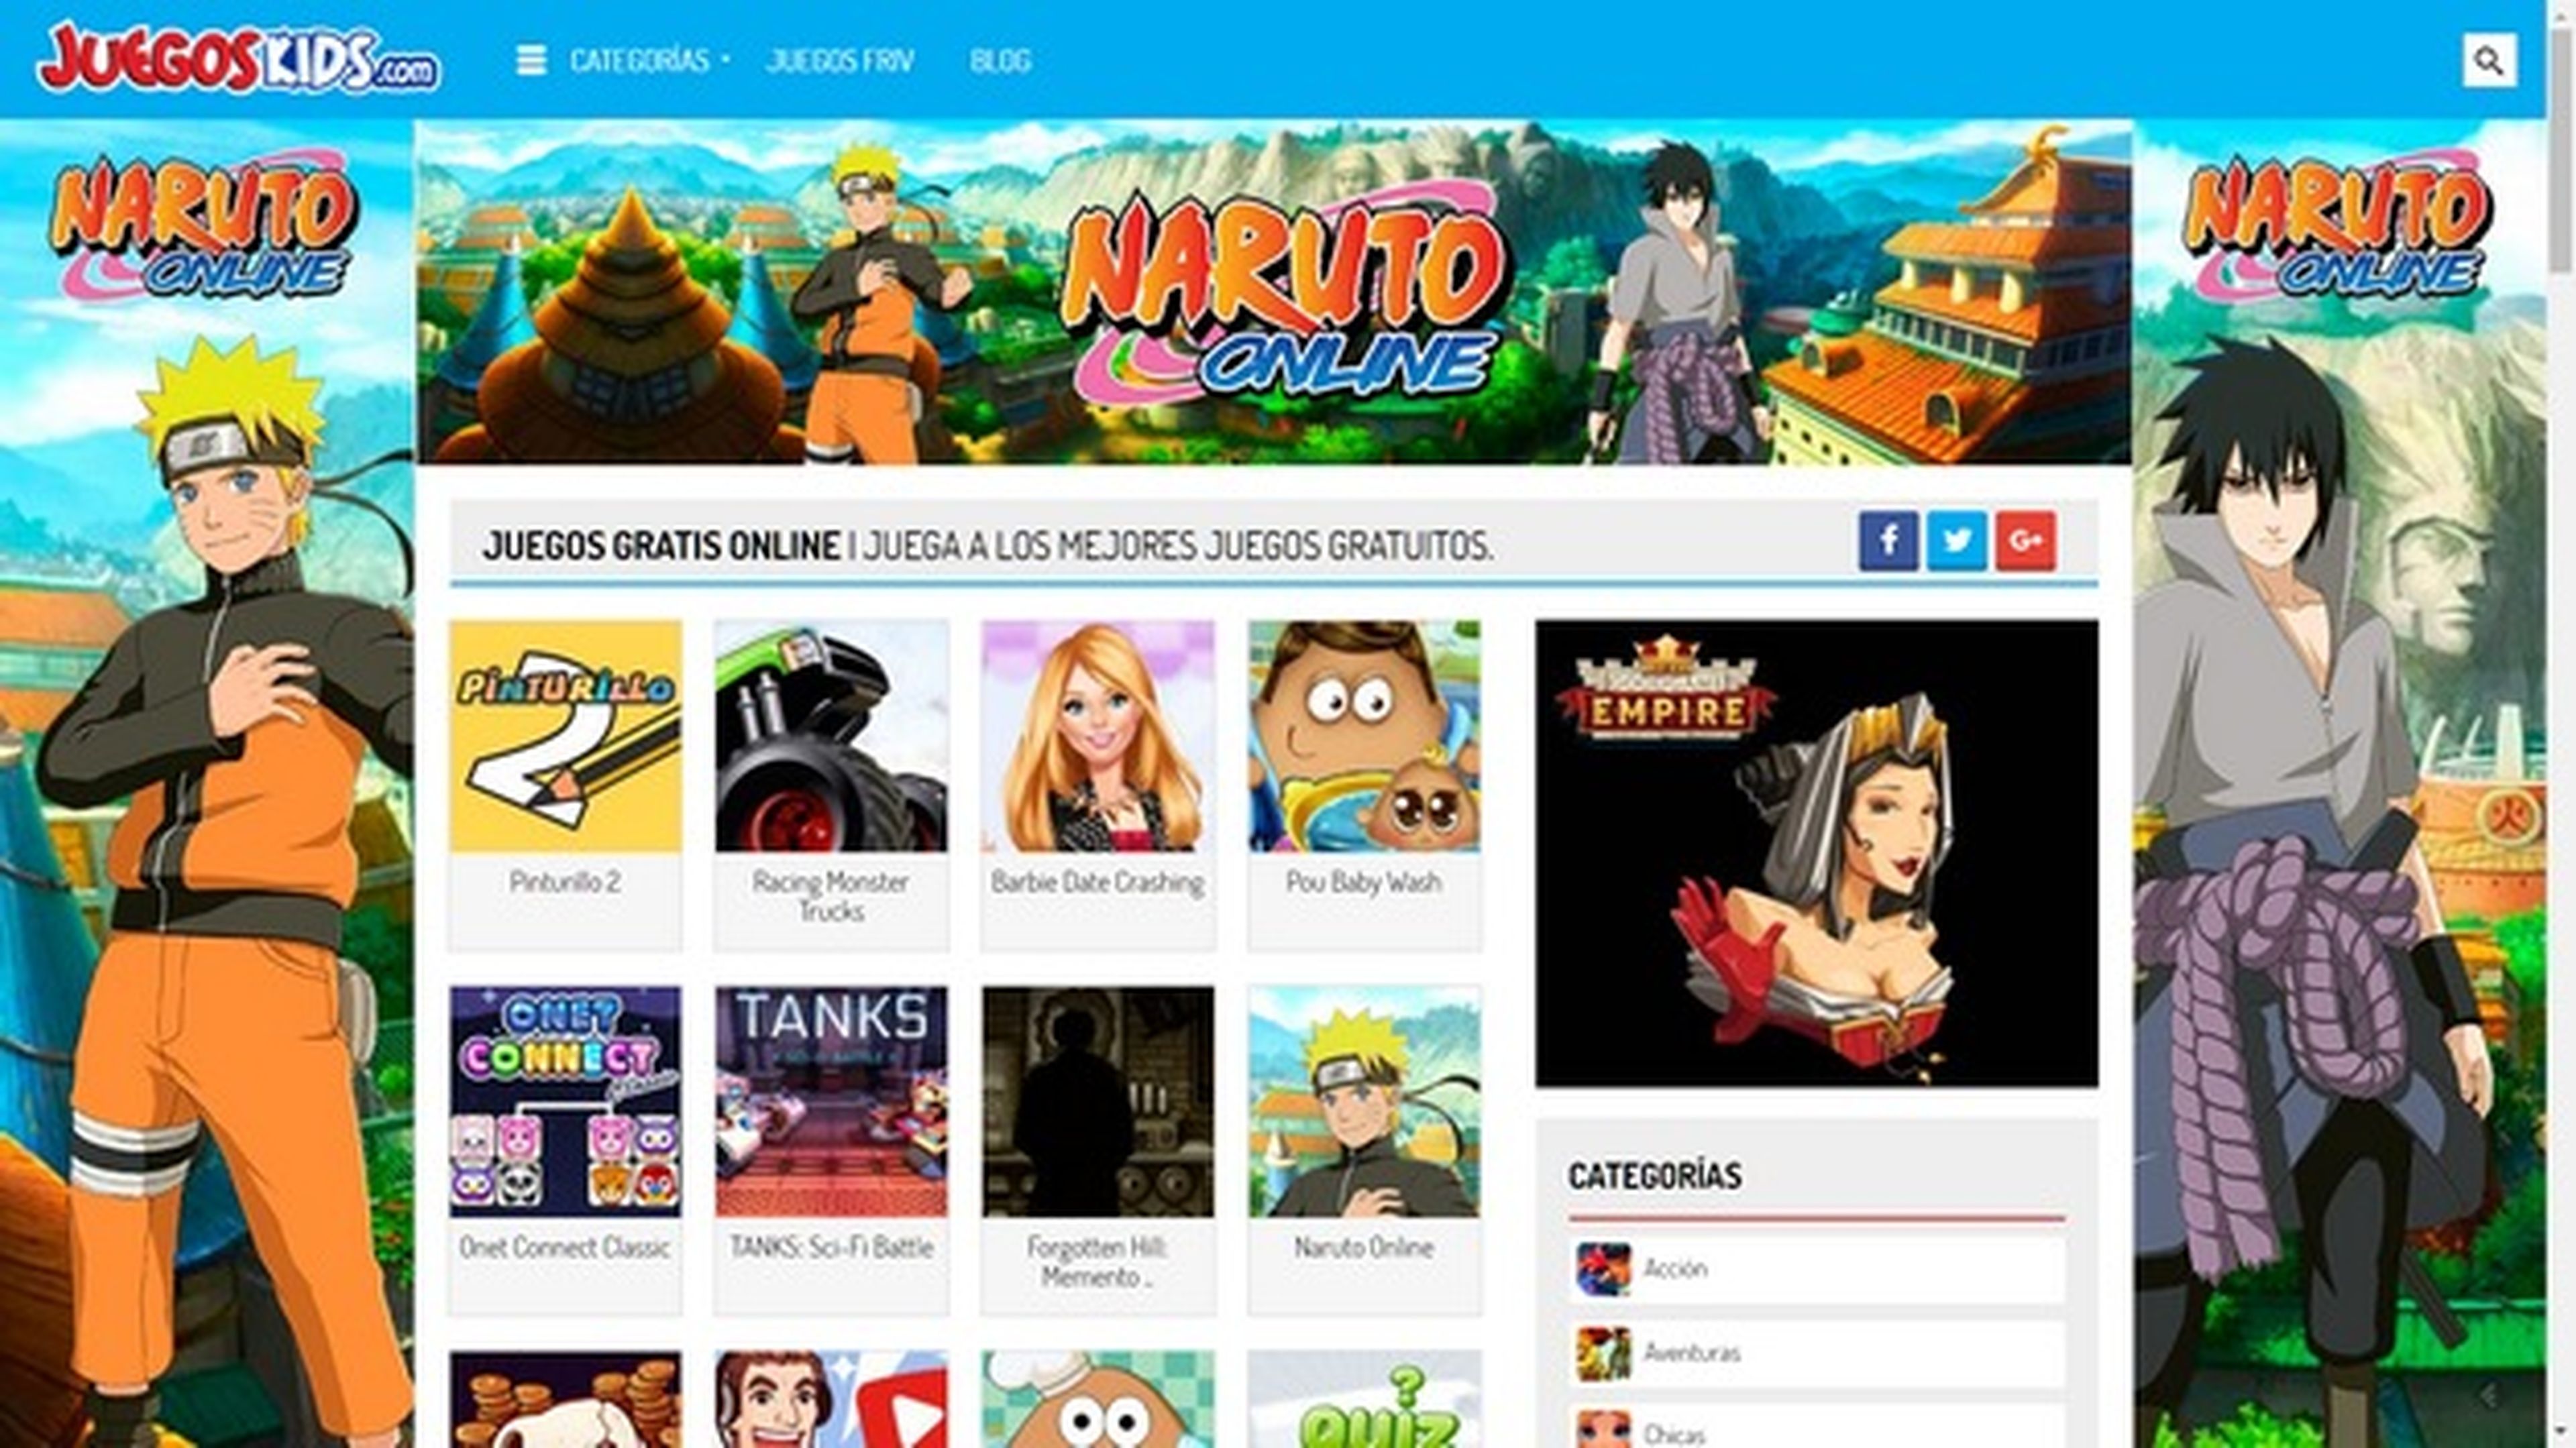 Juegos - Juegos Gratis Online en Minijuegos